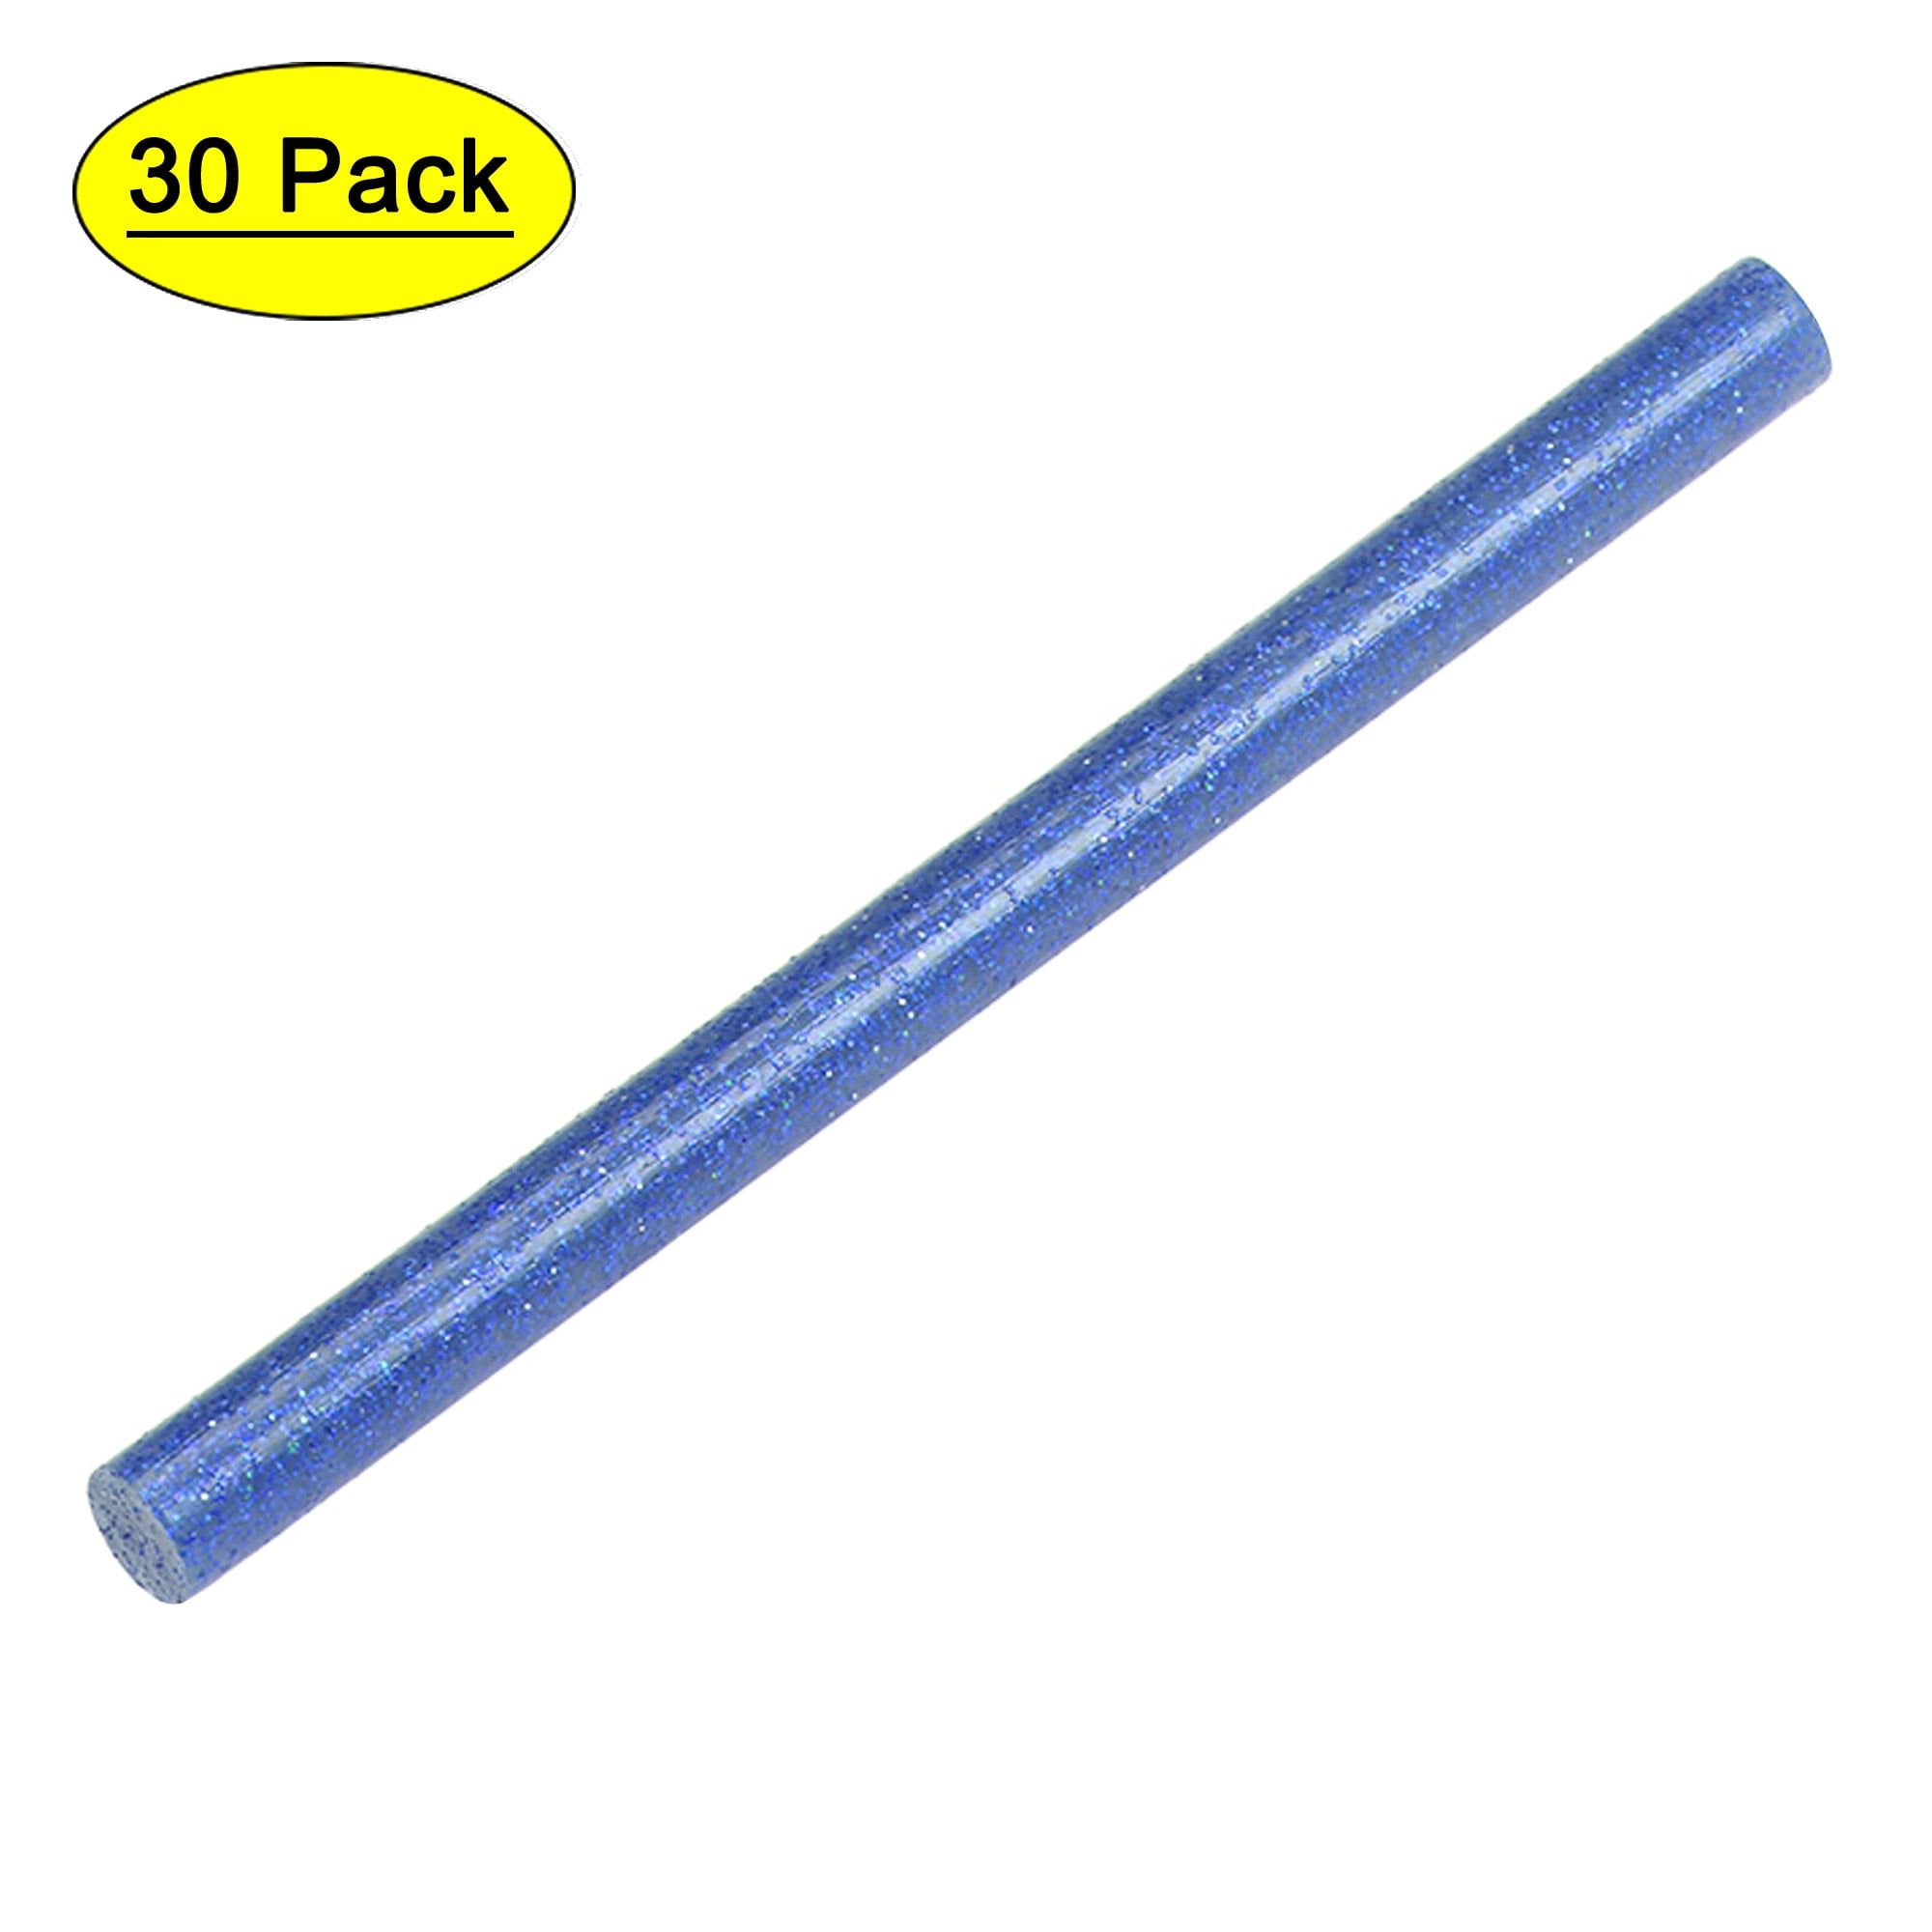 Mini Hot Glue Gun Kit with 15pcs 0.28 inch x 8 inch Clear Glue Sticks and 15pcs 0.28 inch x 4 inch Colorful Glitter Glue Sticks, Blue